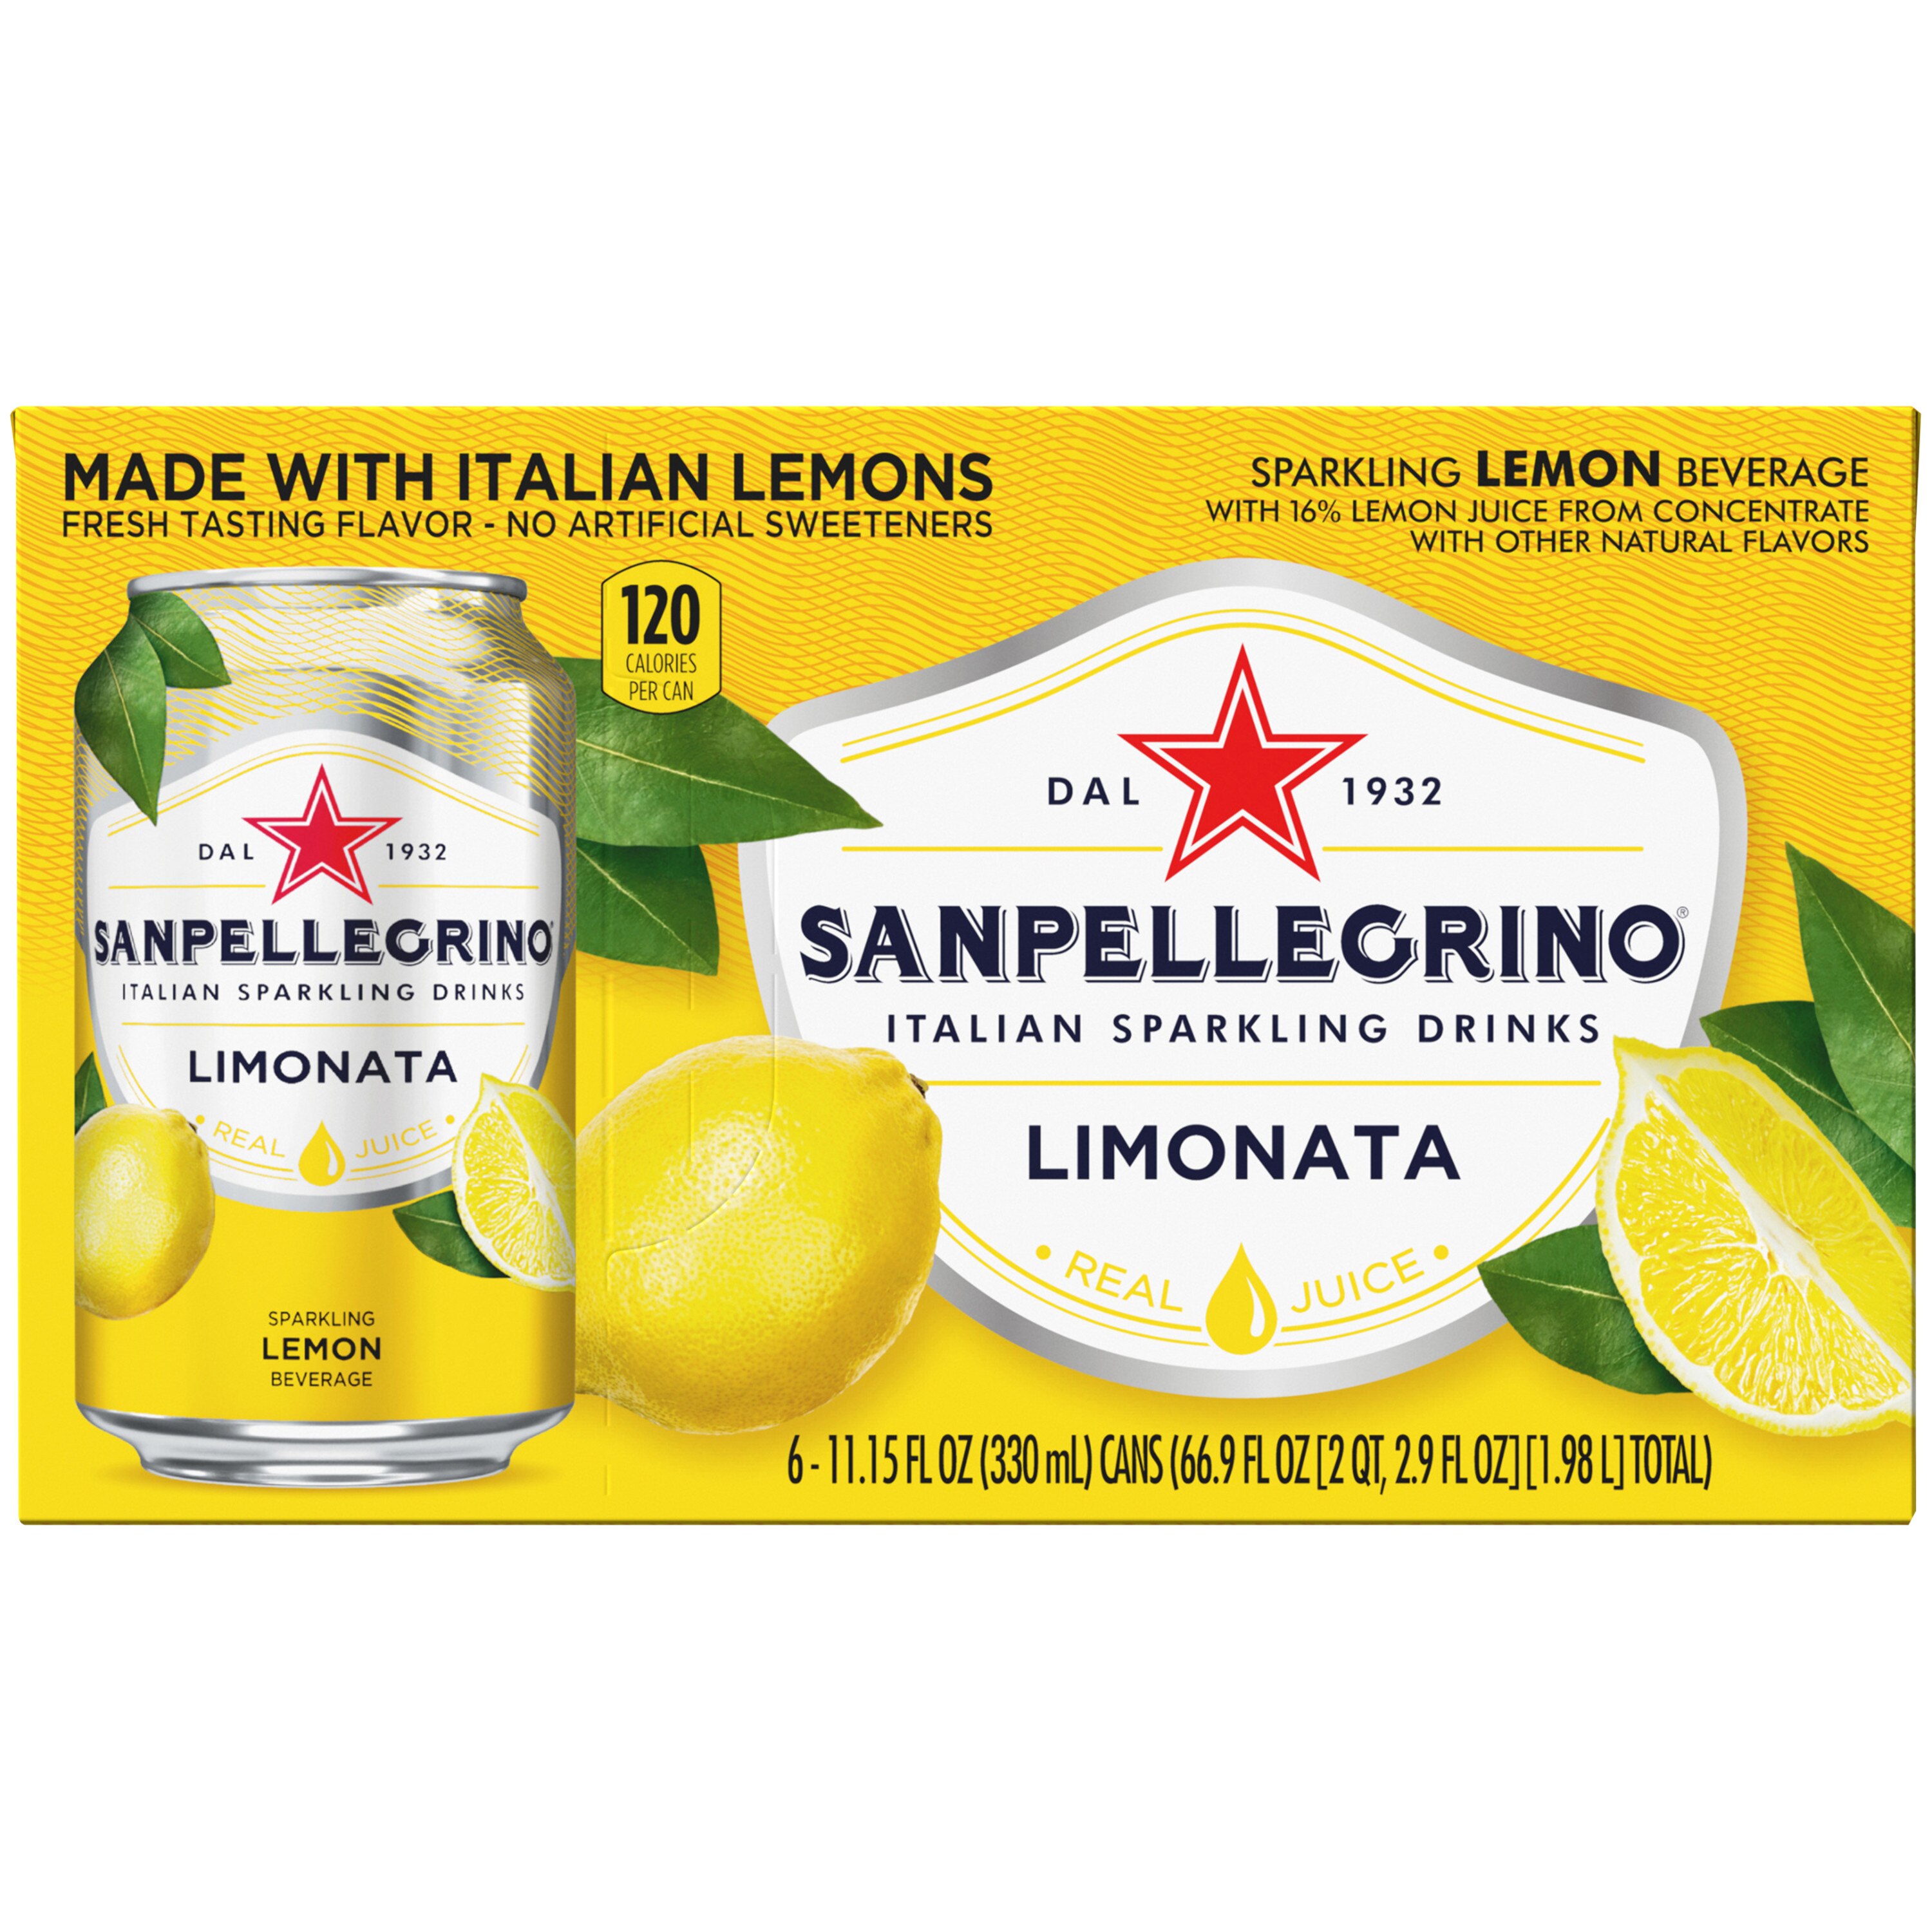 Sanpellegrino Sparkling Fruit Beverages, Limonata (Lemon), 6 ct, Cans, 73.44 oz